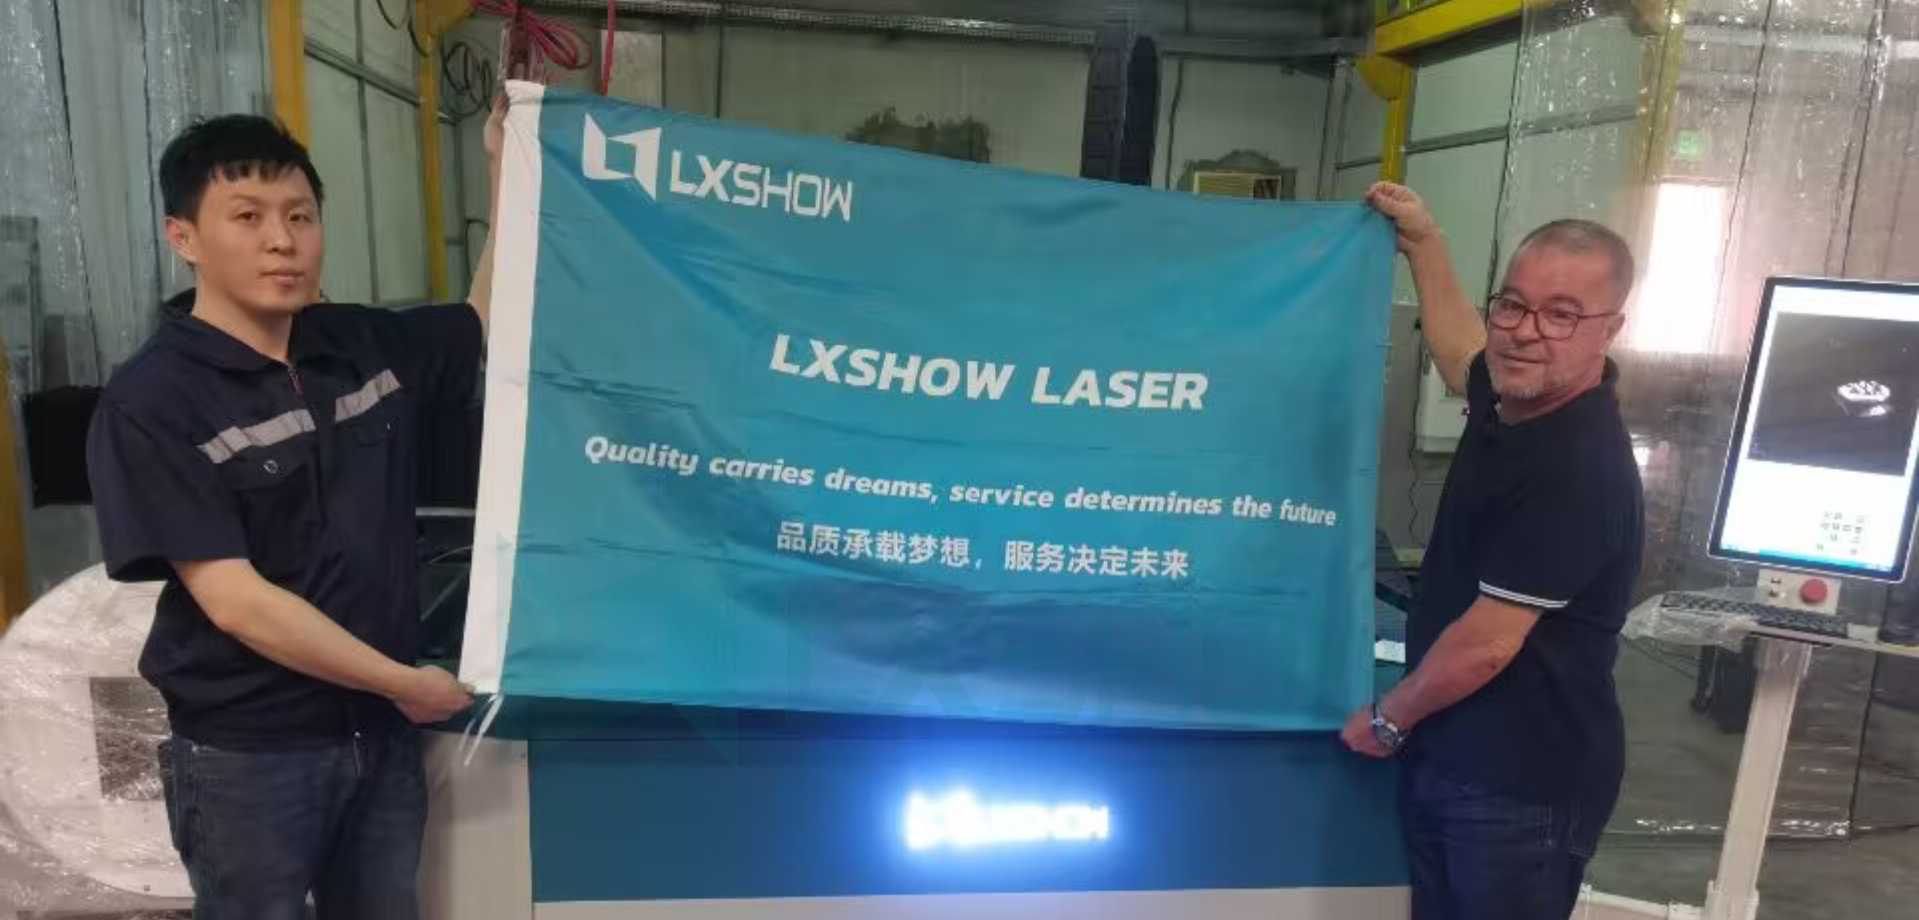 LXSHOW فلزي لیزر کټر ماشین LX3015FT: یوه پانګه اچونه، دوه دندې